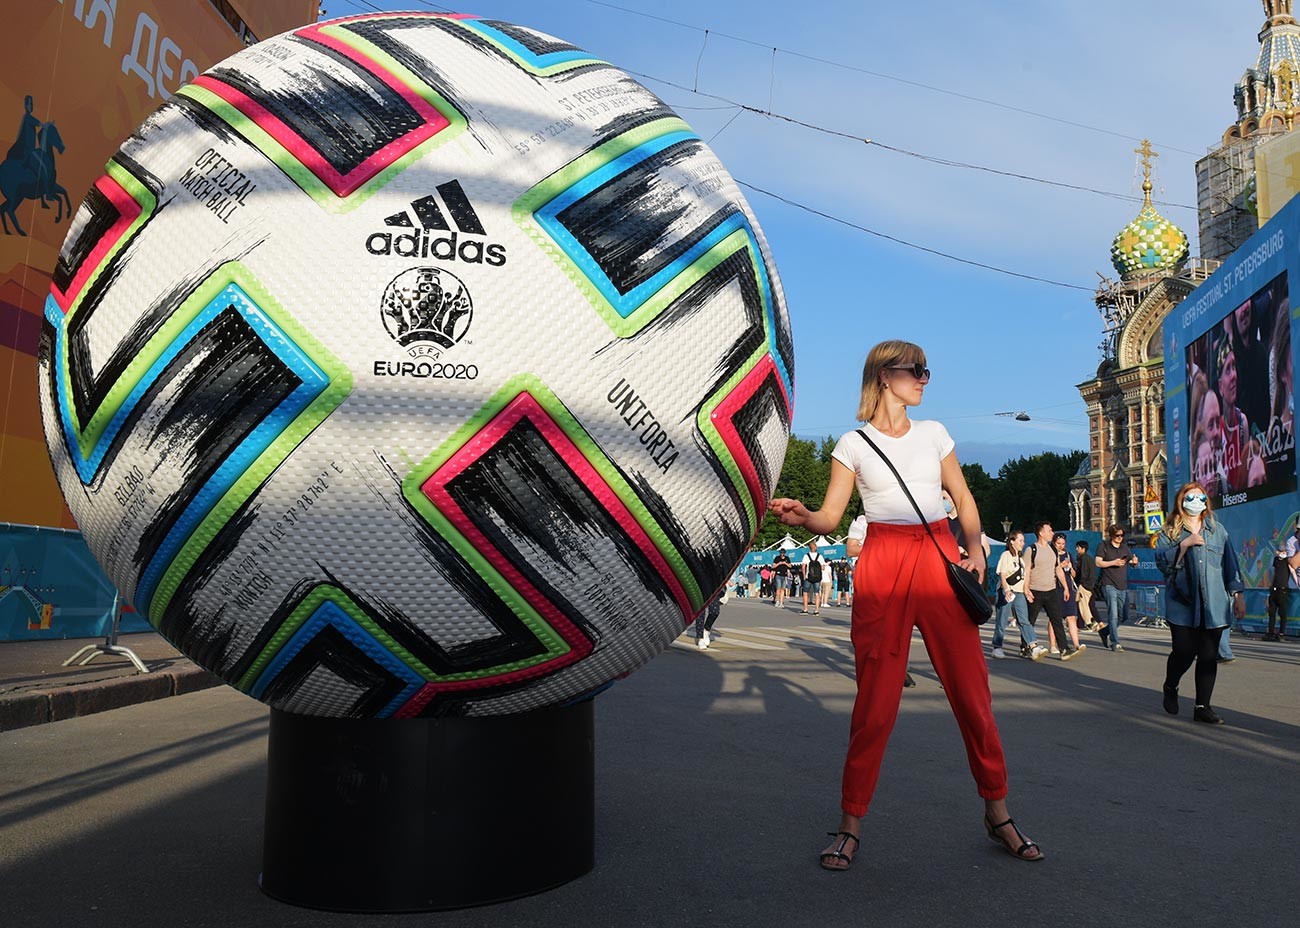 Девојка се фотографише у близини копије званичне лопте Европског фудбалског првенства 2020. у навијачкој зони на Коњушеном тргу у Санкт Петербургу.